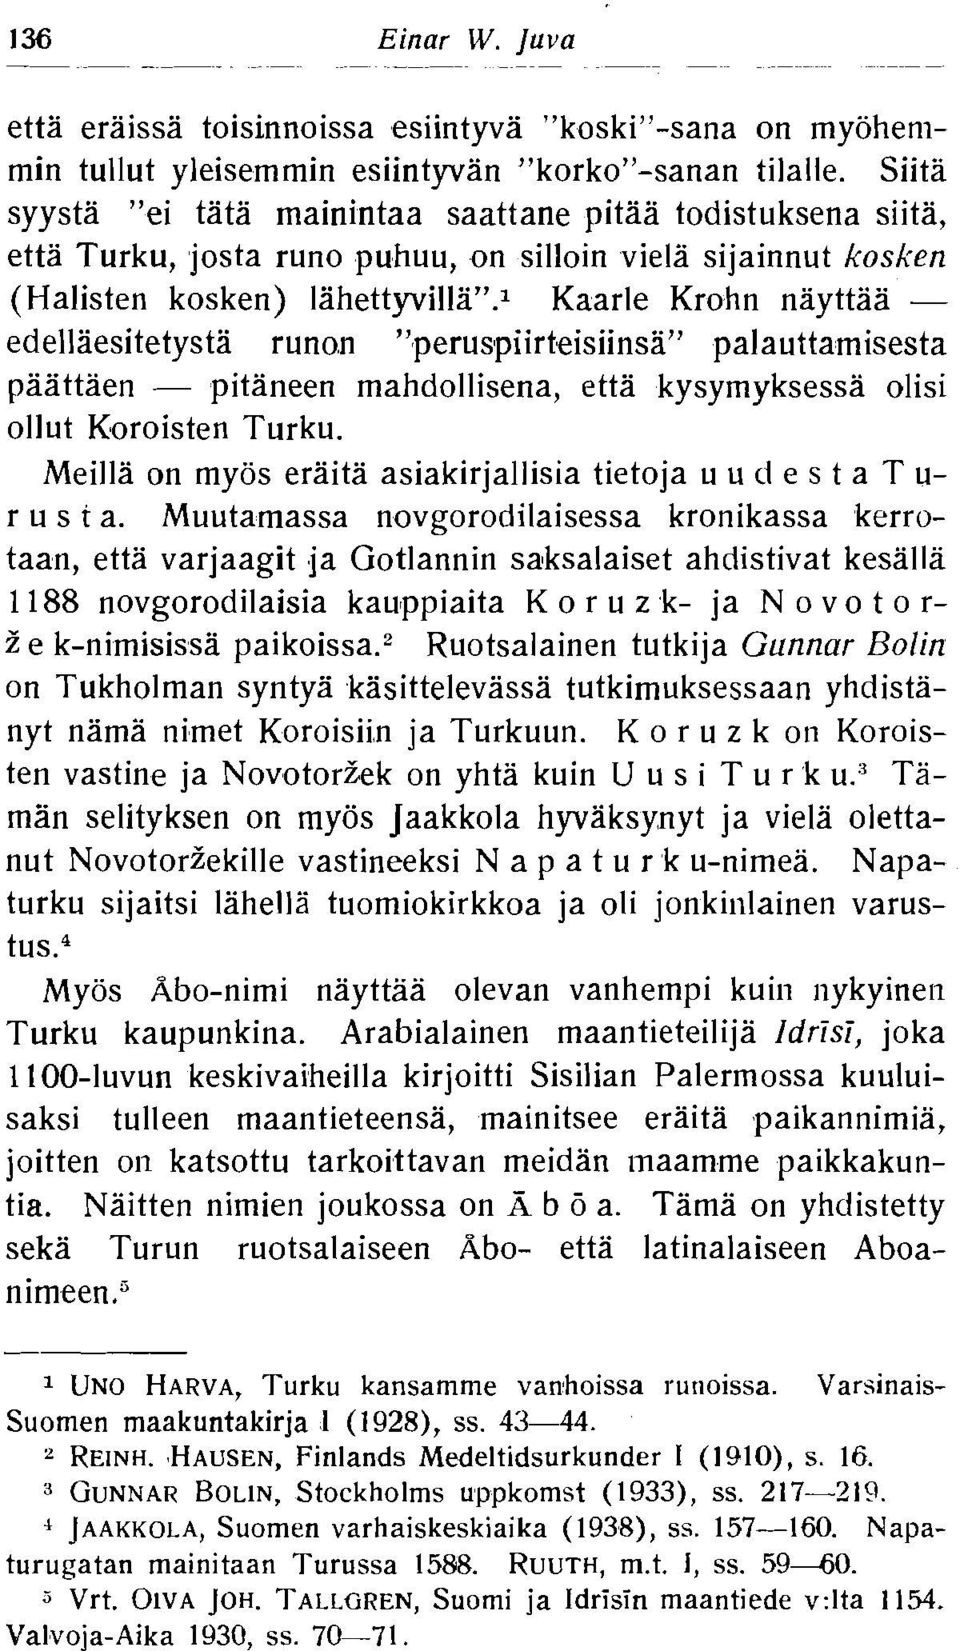 l Kaarle Krohn nayttaa - edellaesitetysta runon "peruspiirt,eisiinsa" palauttamisesta paattaen - pitaneen mahdollisena, etta kysymyksessa olisi ollut K~oroisten Turku.